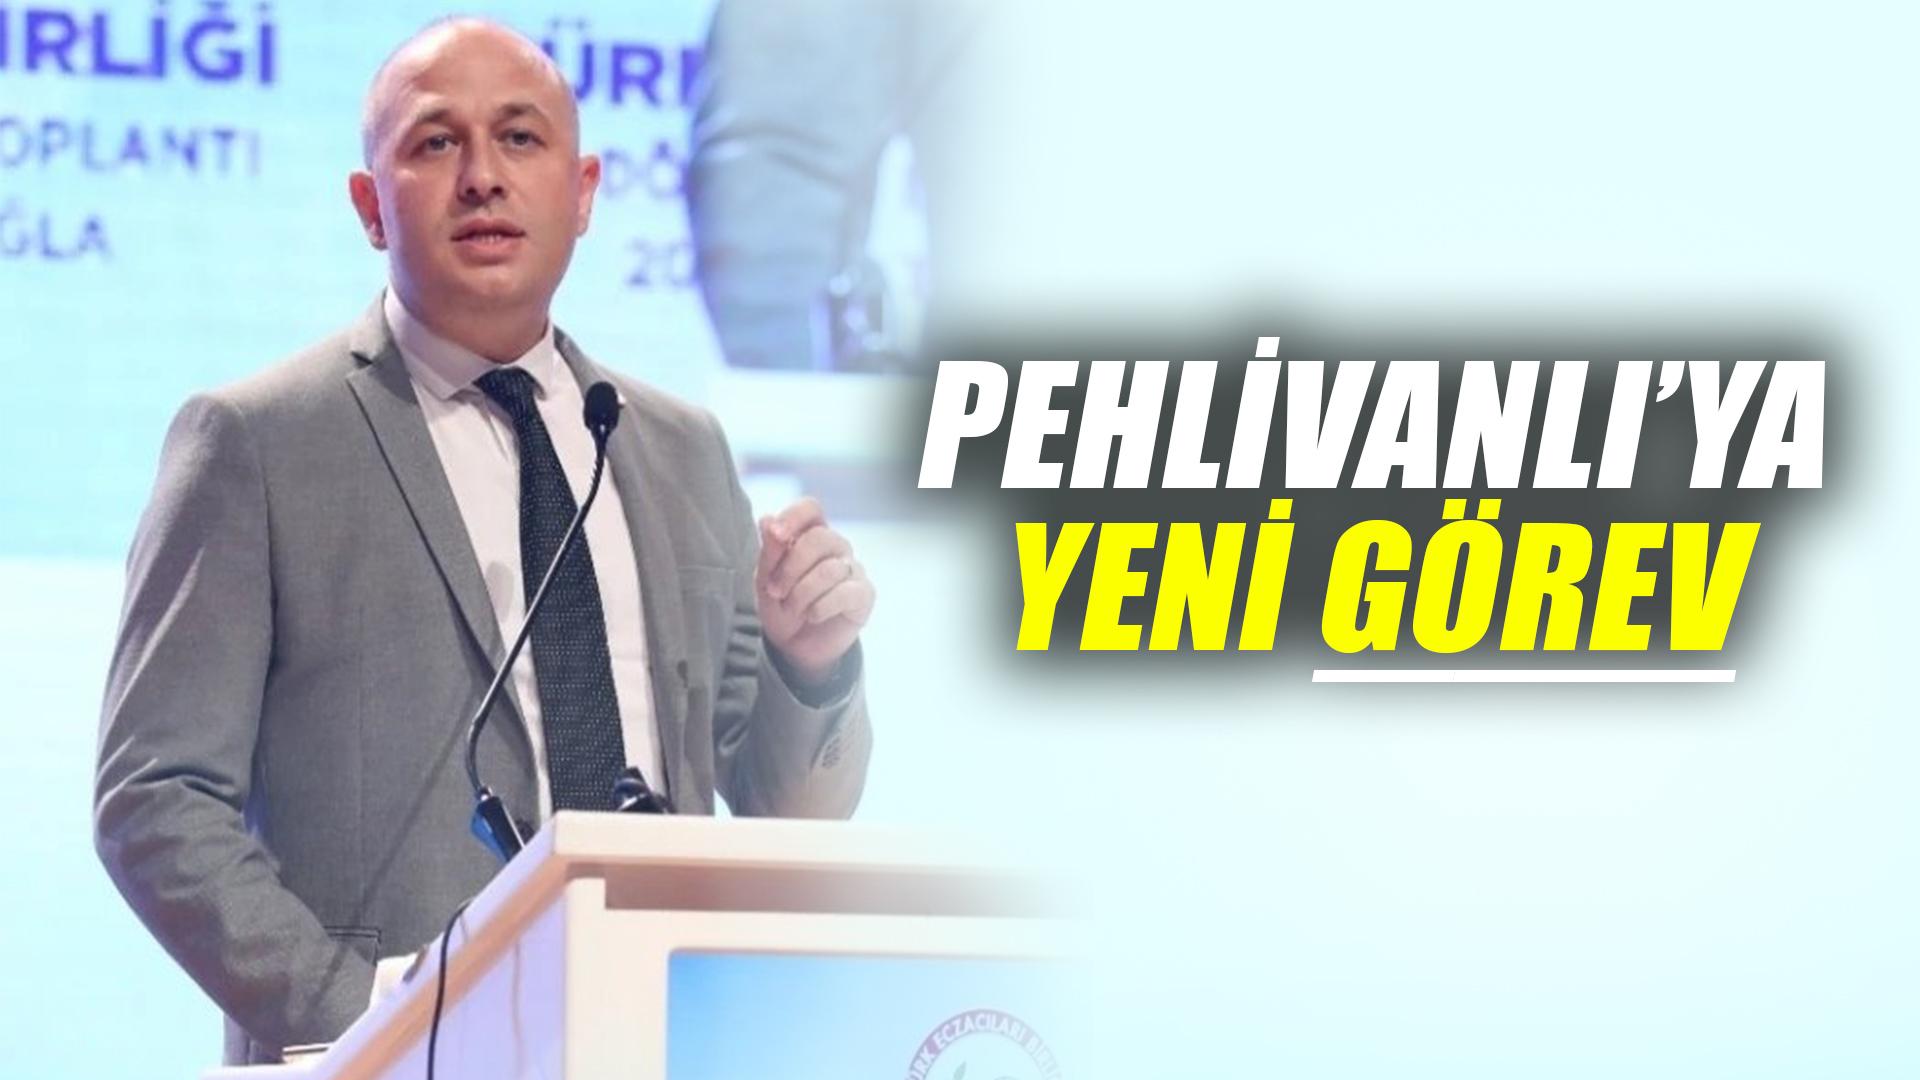 Pehlivanlı Türk eczacılar birliği merkez heyeti üyesi seçildi